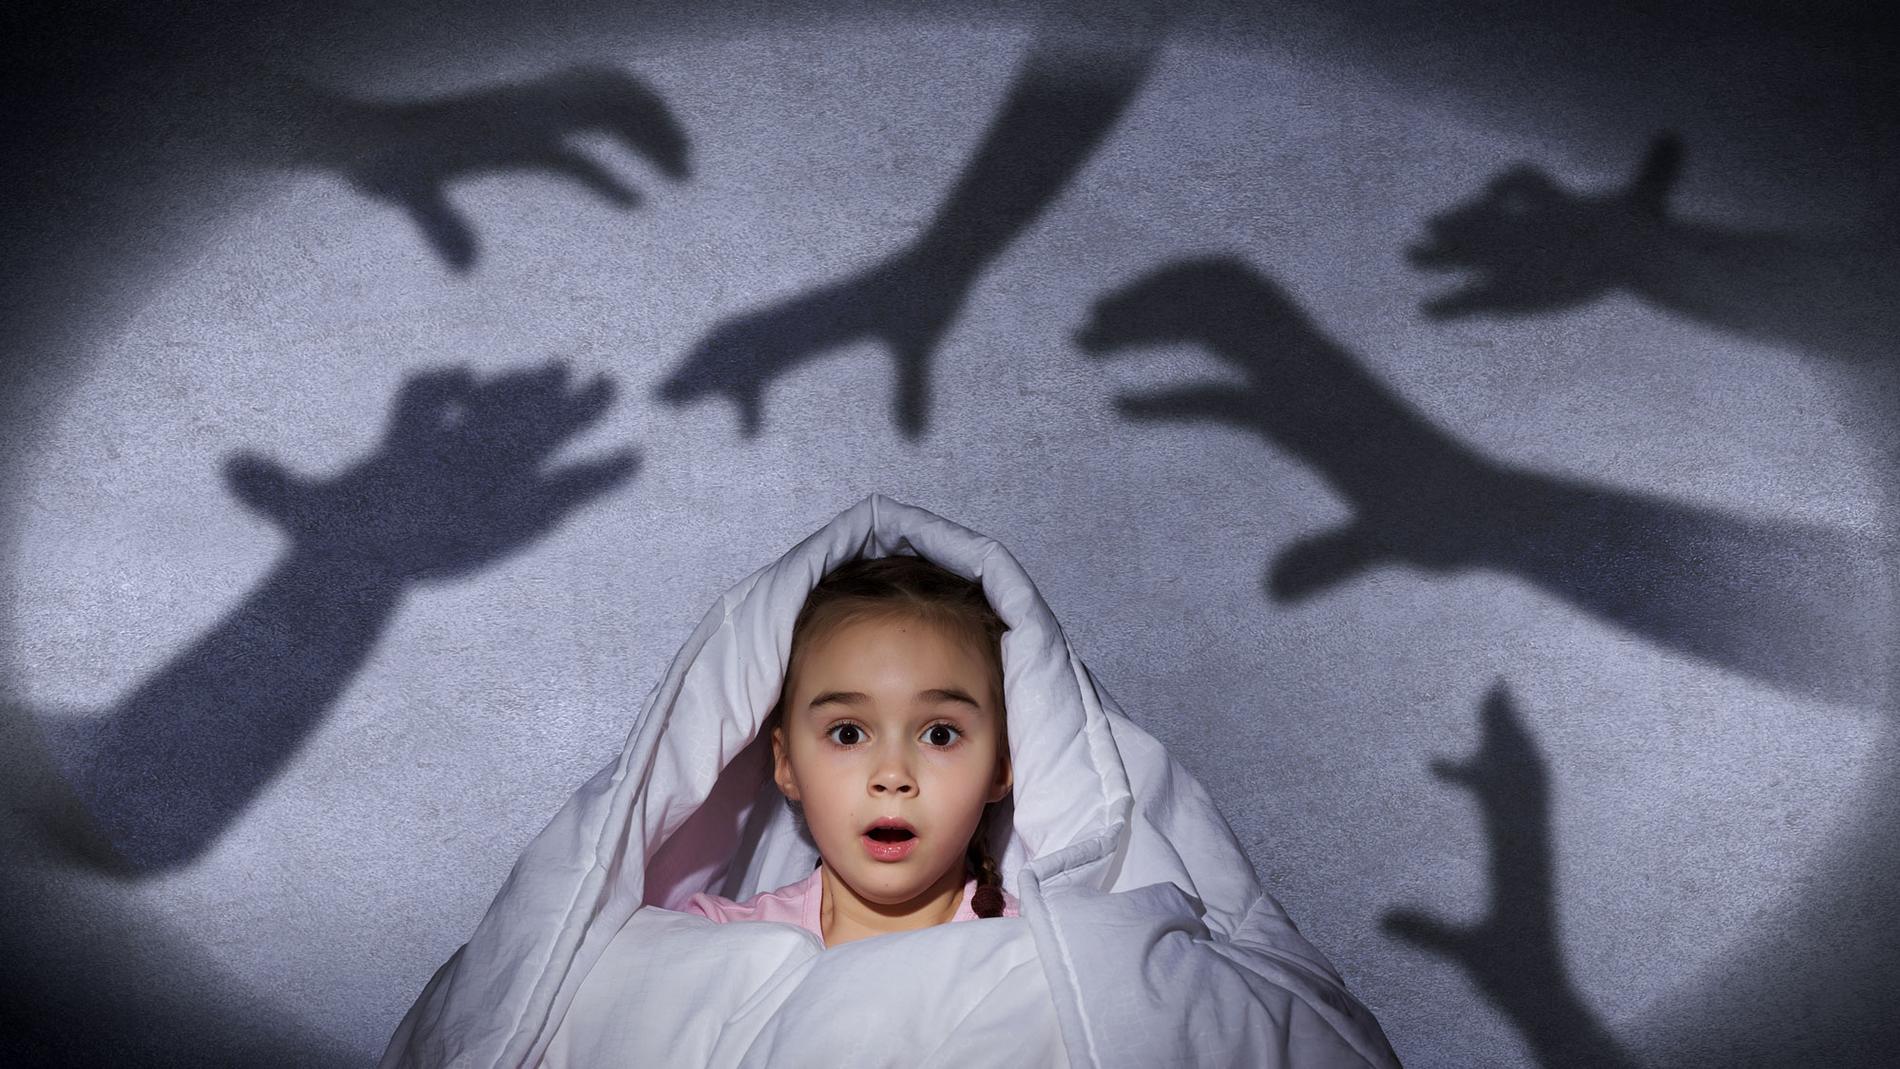 Om ditt barn drabbas av mardrömmar så försök trösta och lugna barnet.